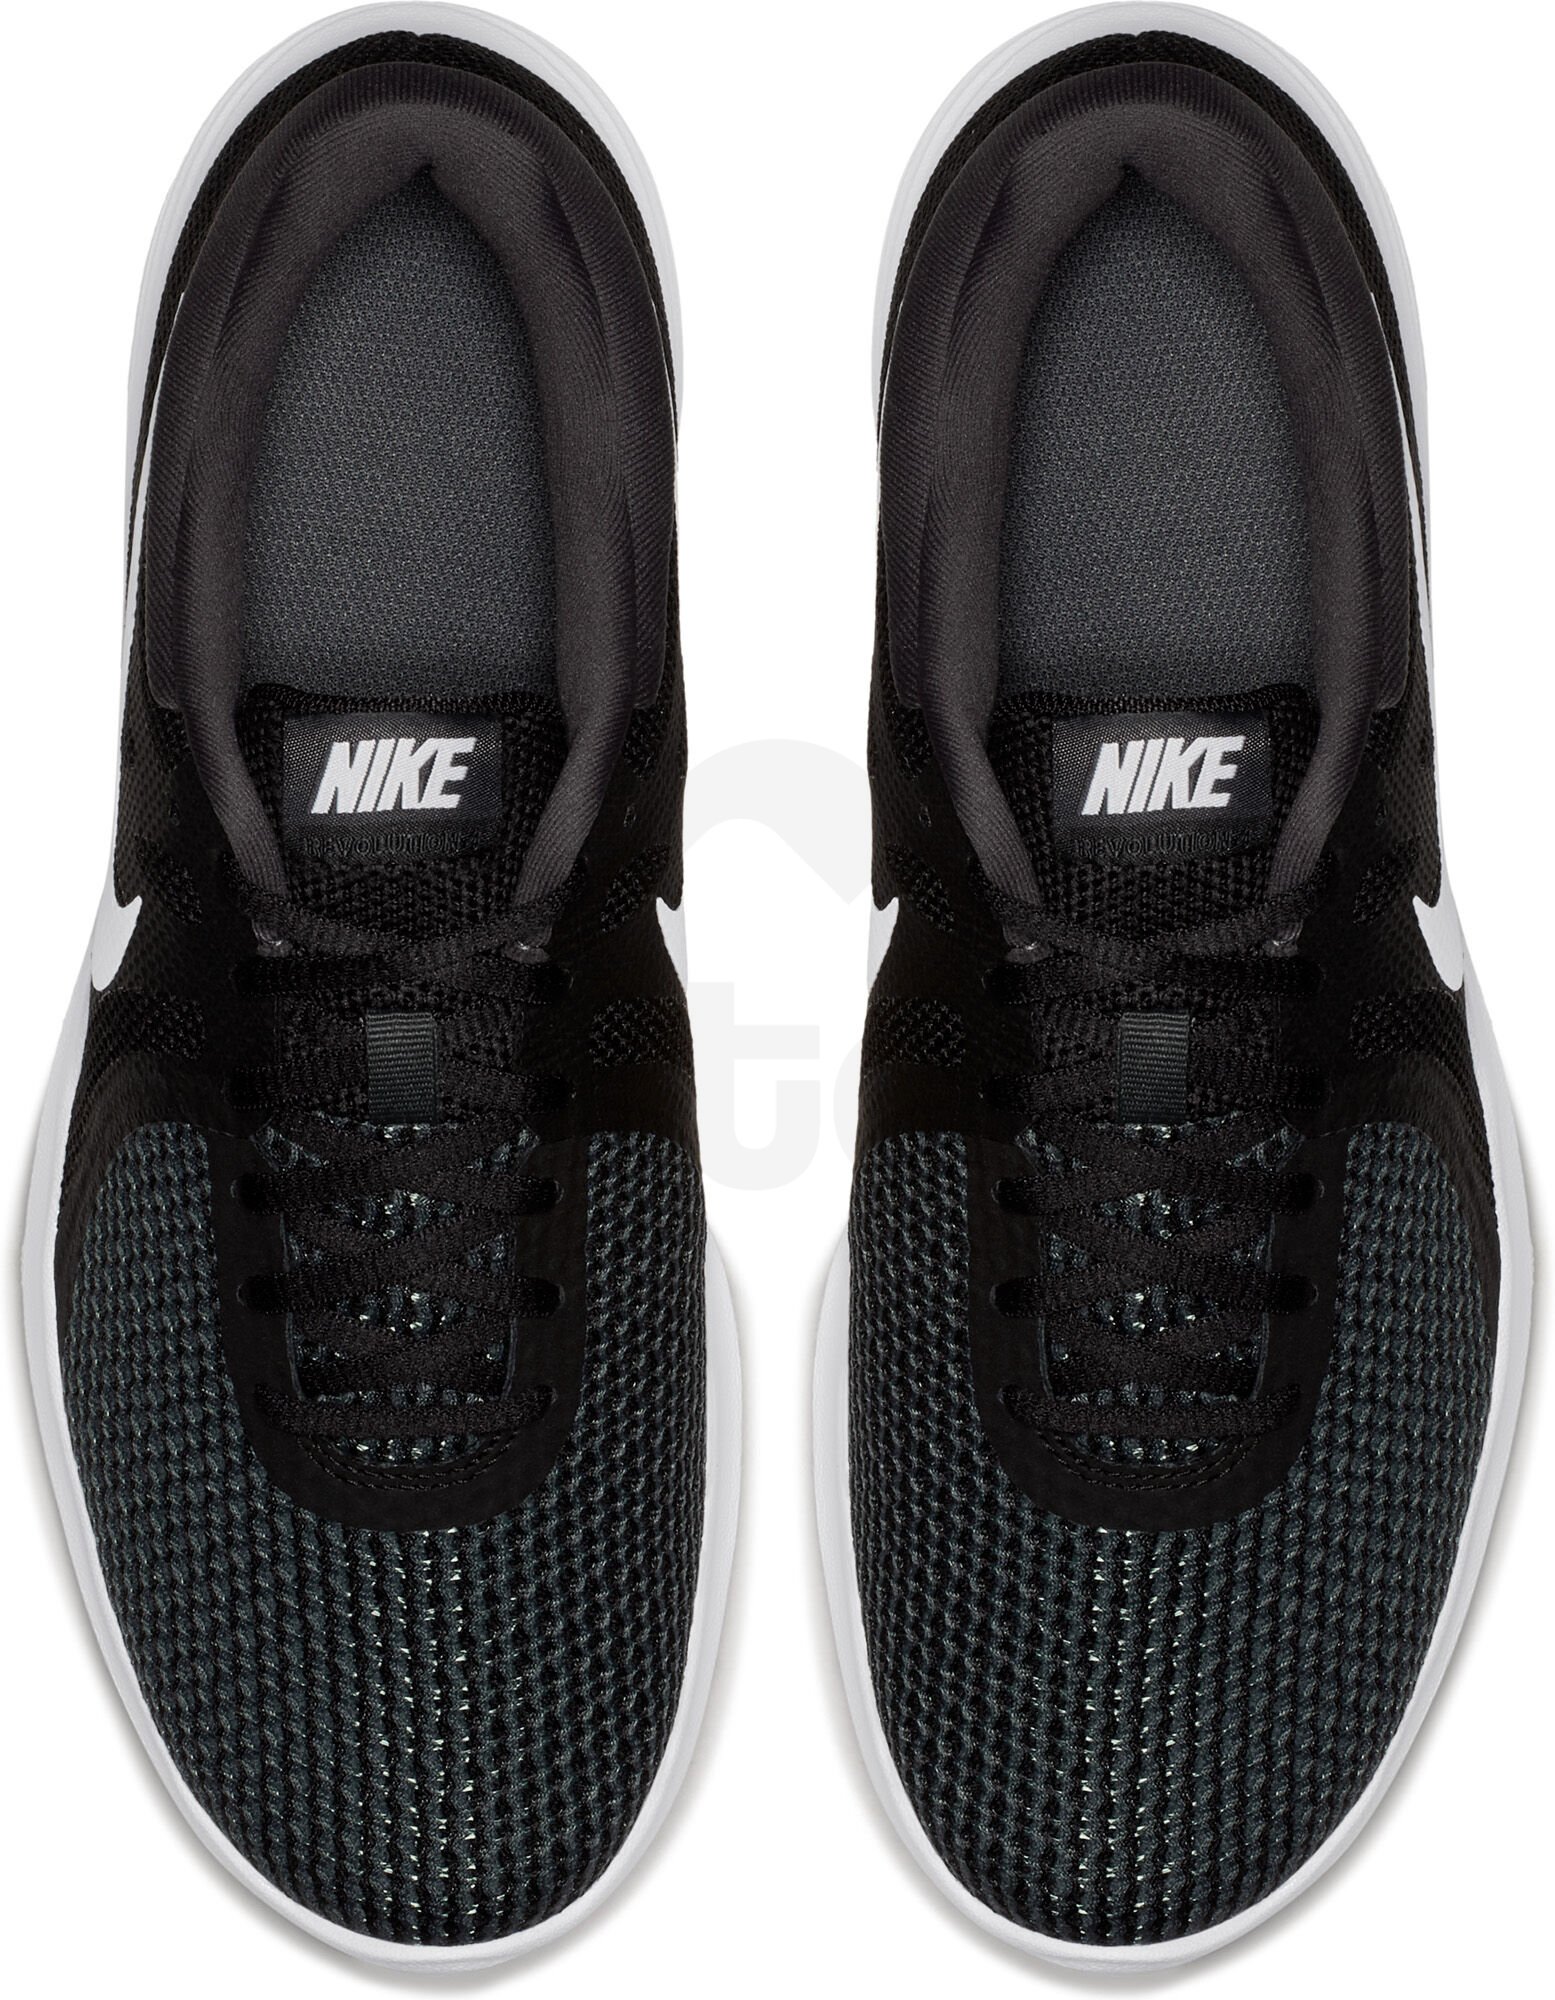 Obuv Nike Revolution 4 - 3632003 10 - černá